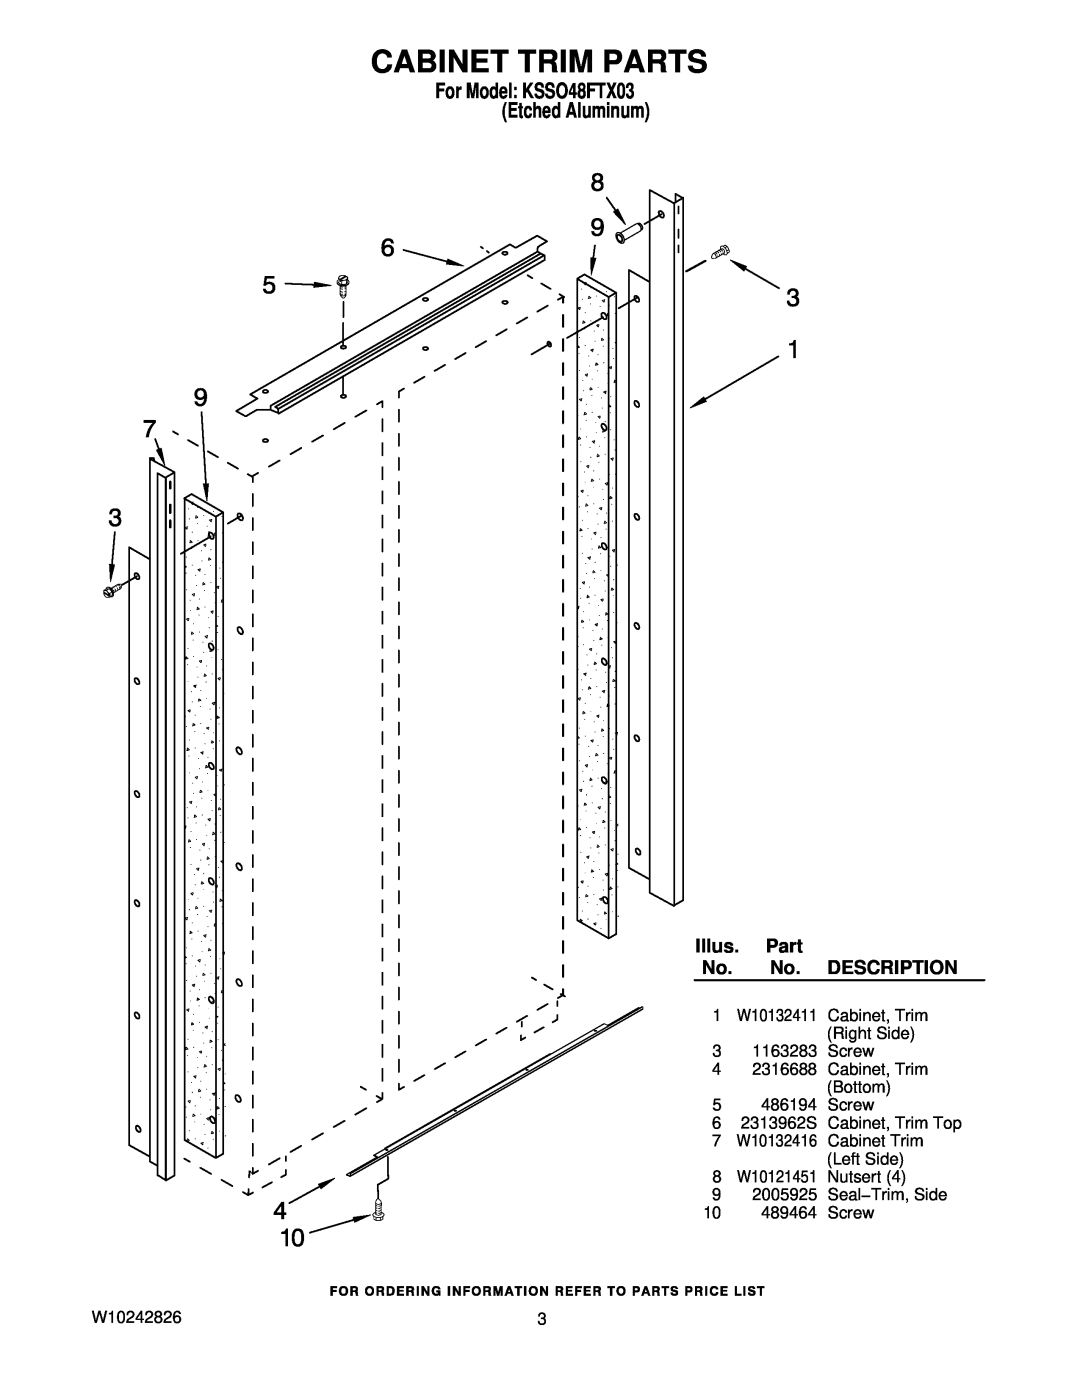 KitchenAid manual Cabinet Trim Parts, For Model KSSO48FTX03 Etched Aluminum, Illus. Part, Description 